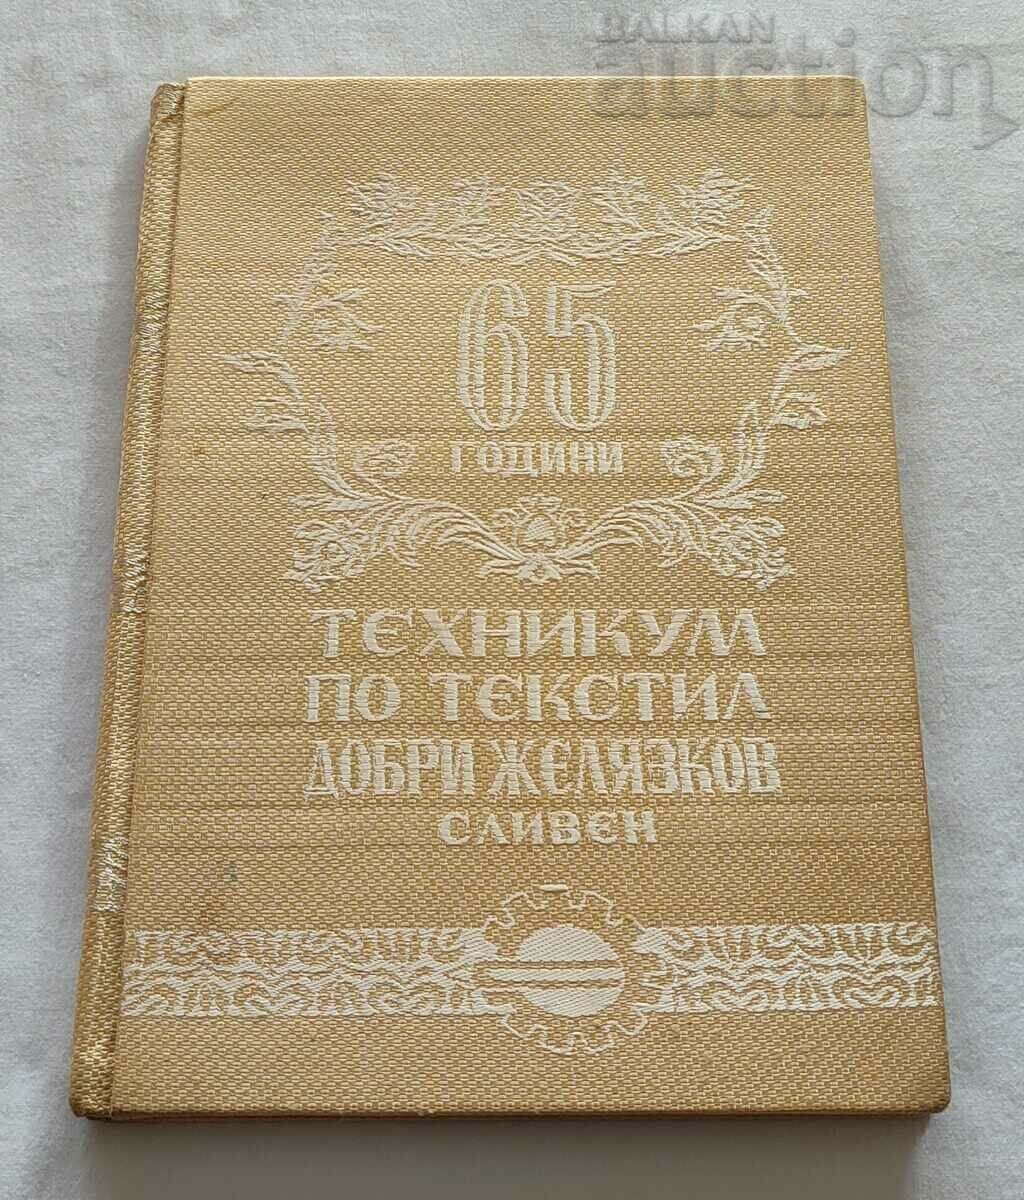 SCOALA TEHNICA DE TEXTILE SLIVEN "D. ZELIAZKOV" 65, 1958